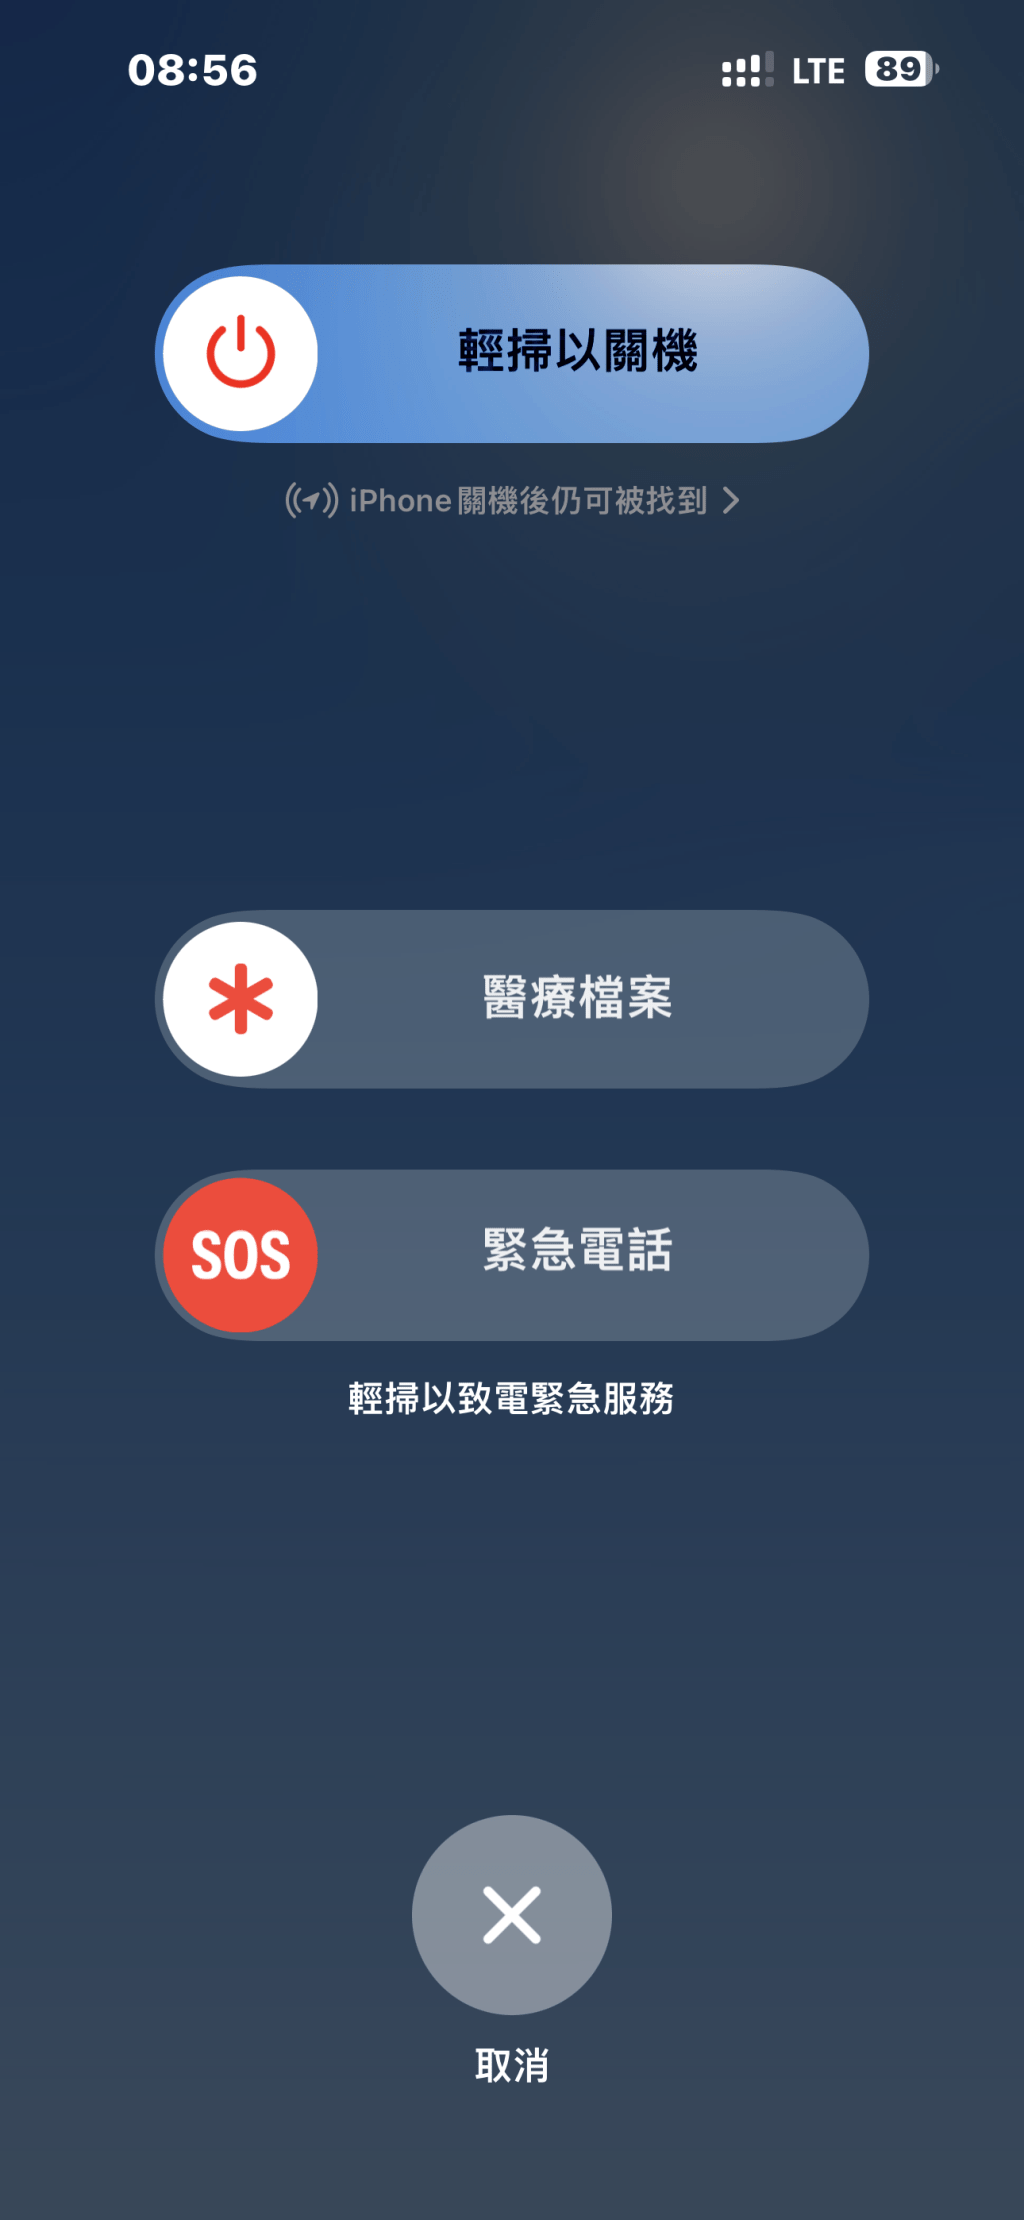 手機可發SOS緊急求救訊號。